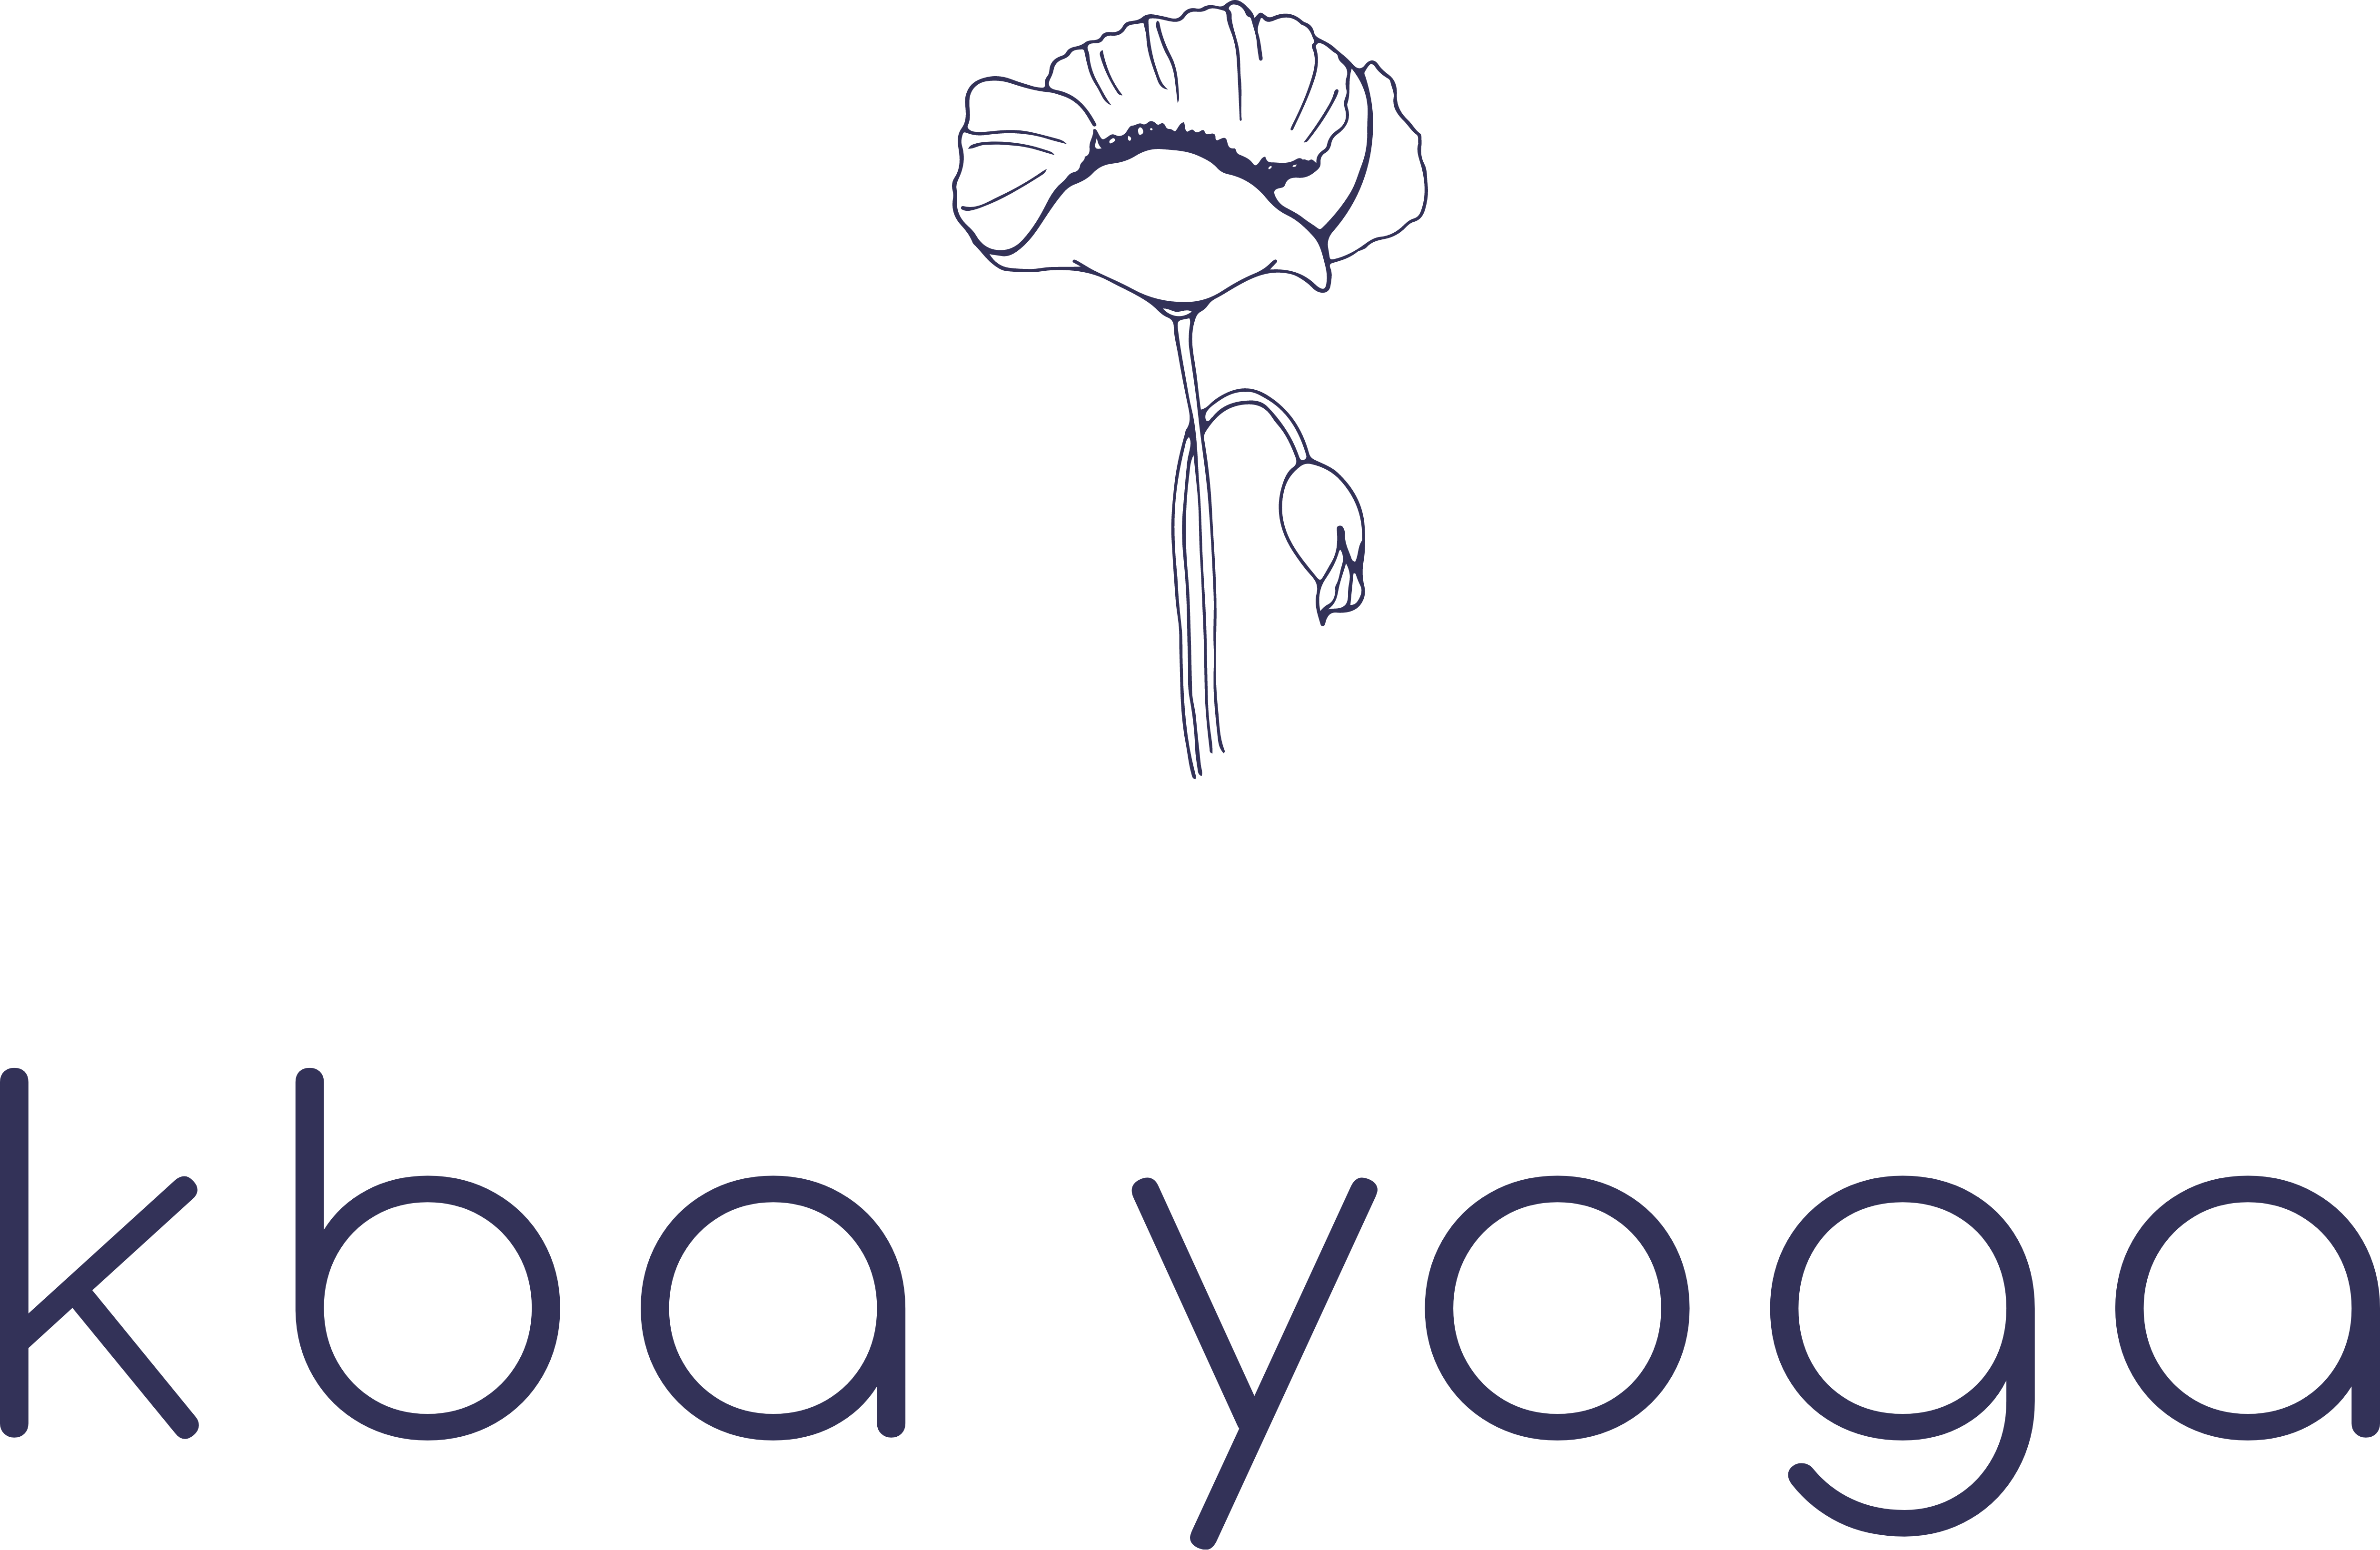 kba yoga